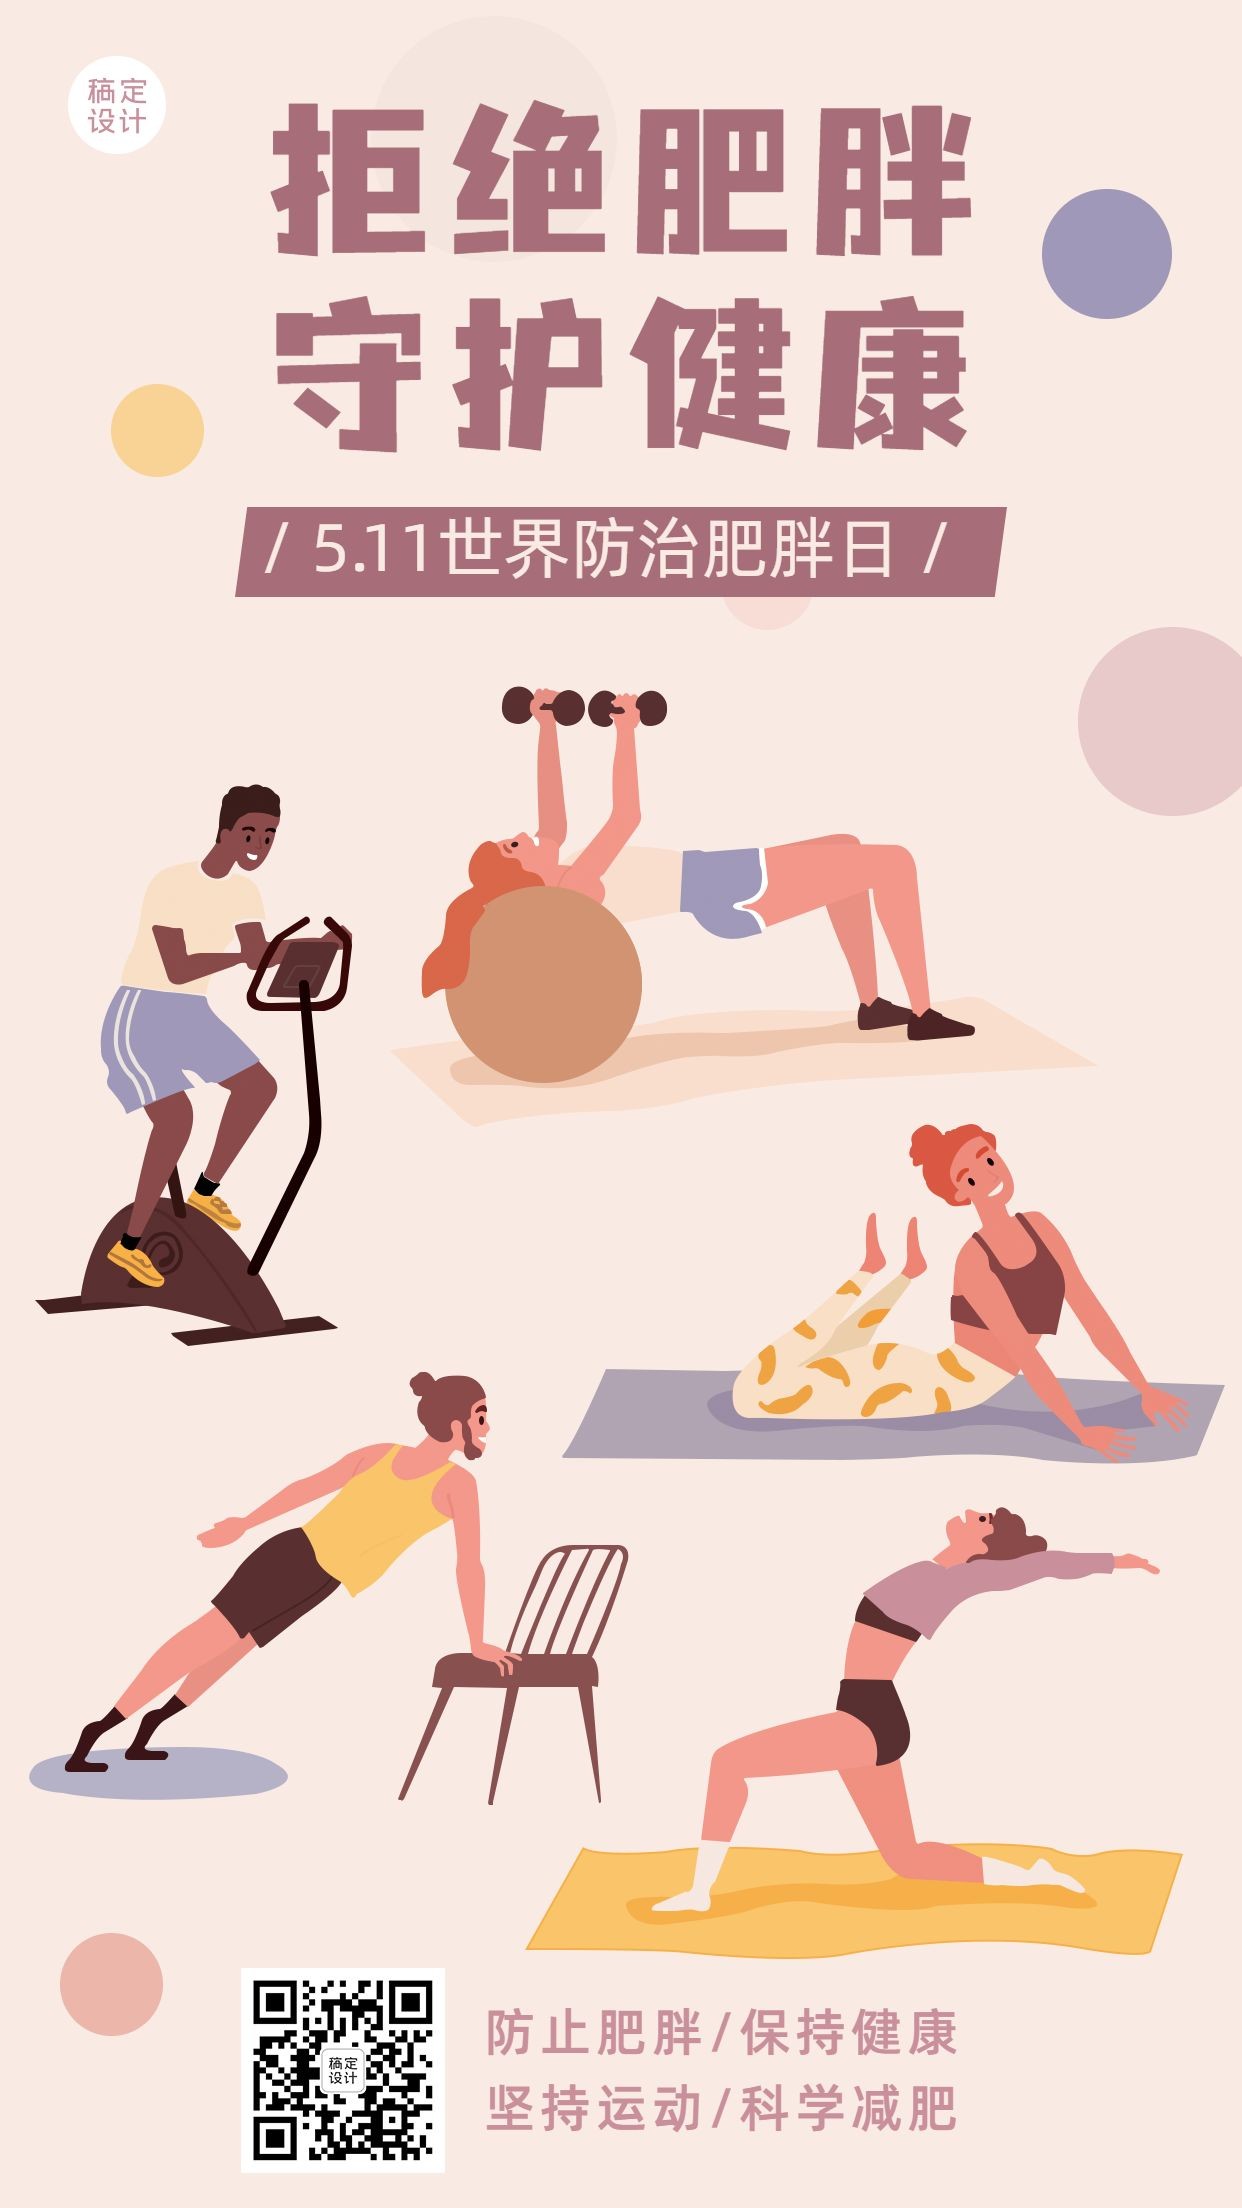 世界防治肥胖日节日宣传手机海报